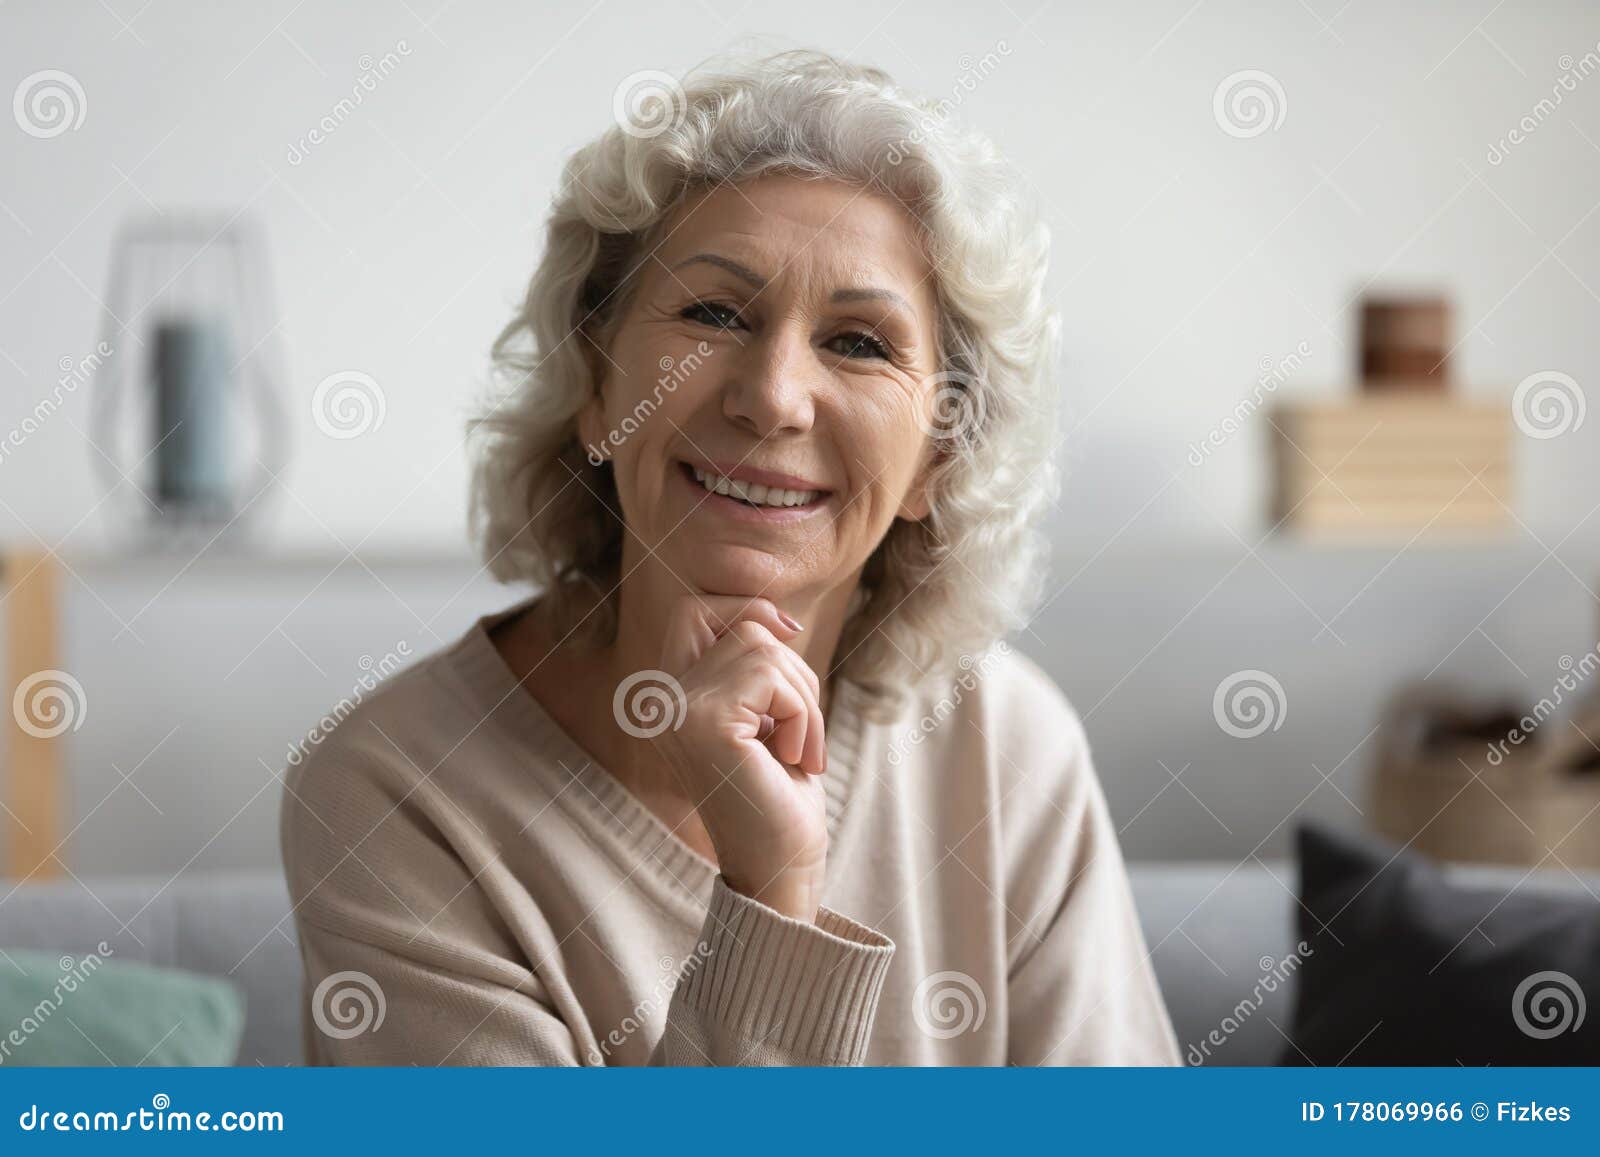 老年女人发型图片大全,70岁老年女短发发型 - 伤感说说吧